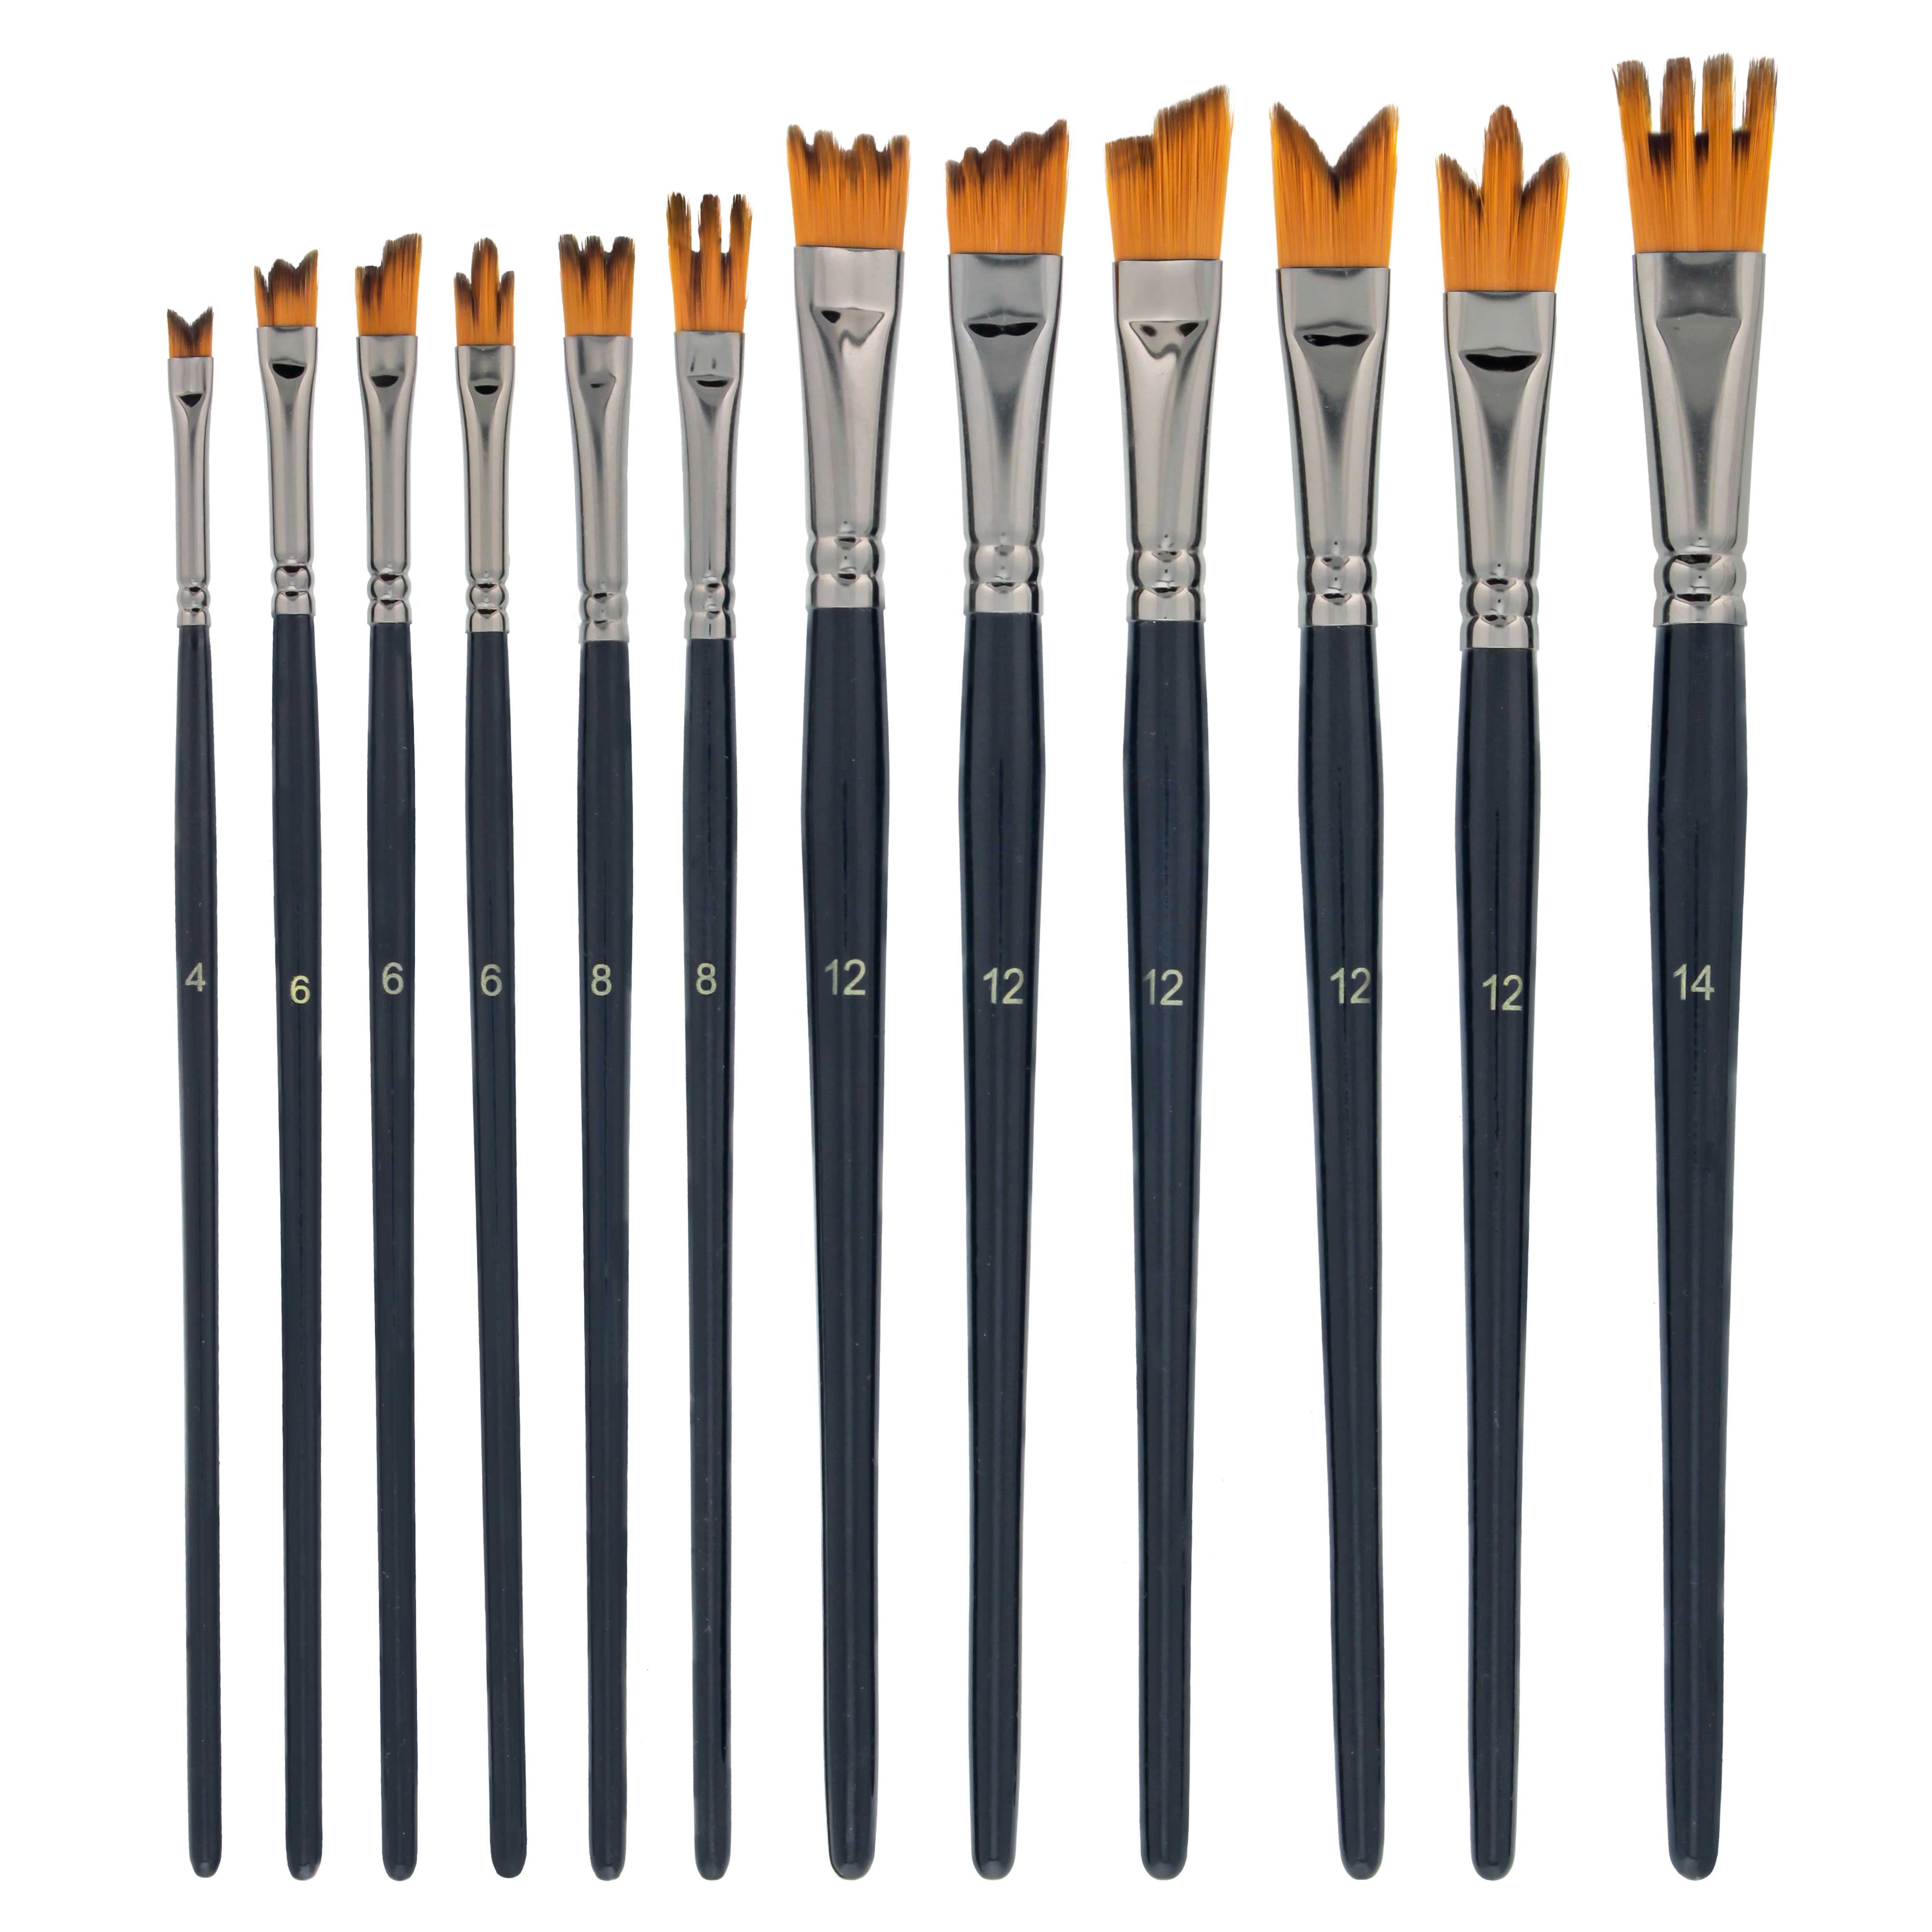 Paint Brush Pro Acryl: Uncle Atom's Favorite Brushes!